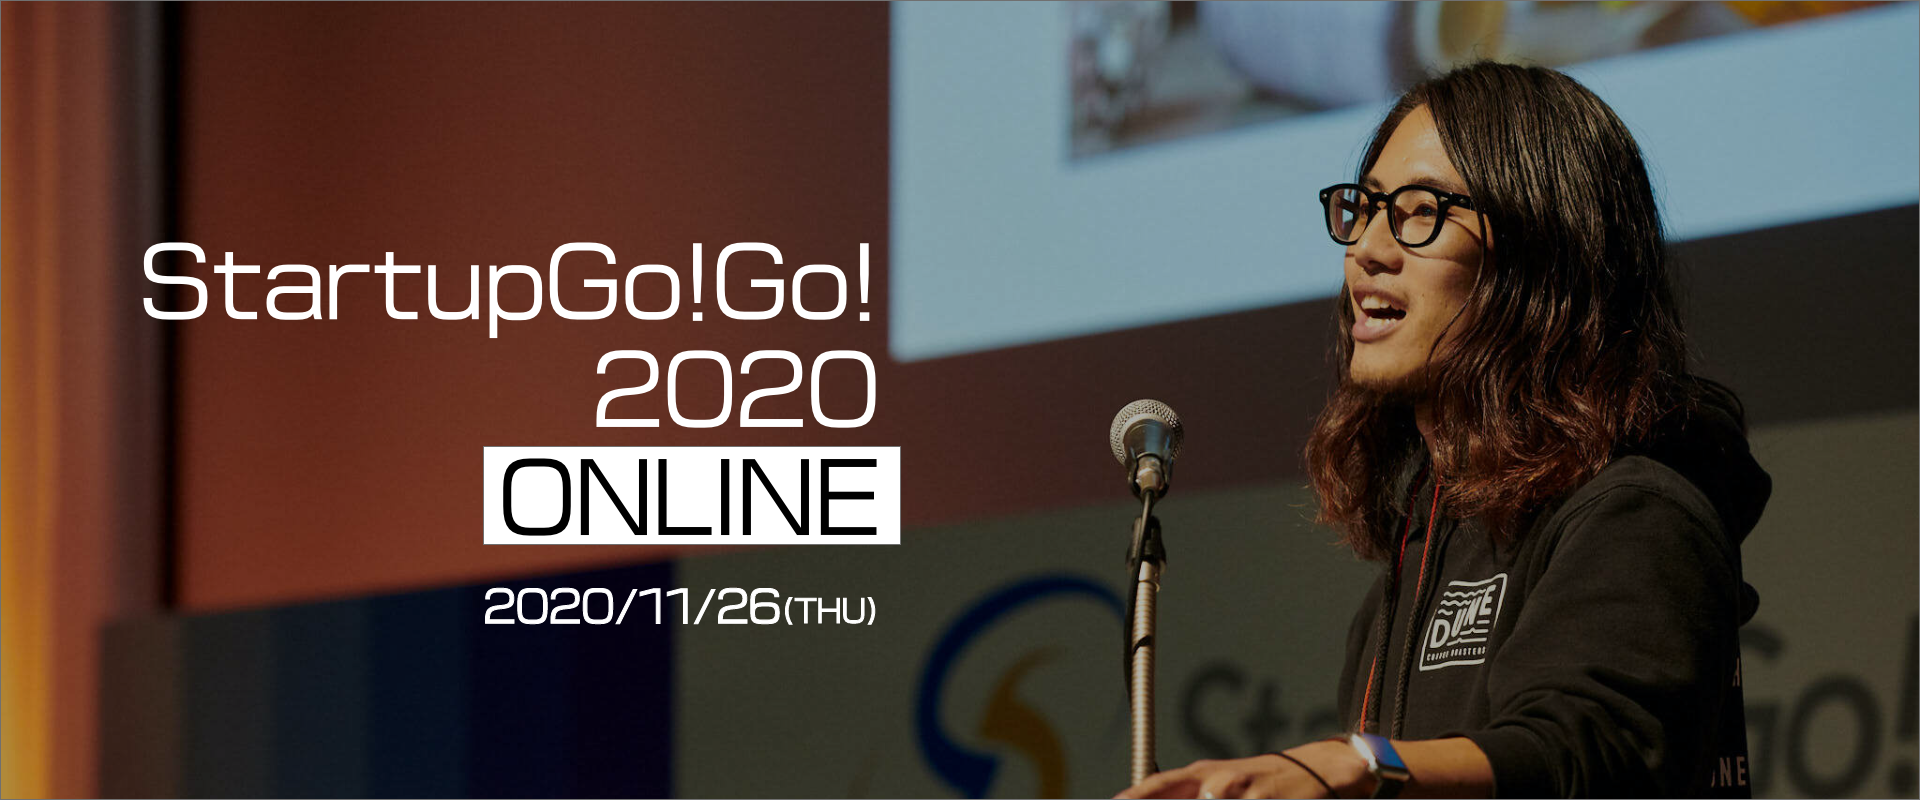 九州最大級のStartupイベントStartupGo!Go!2020 ONLINE 2020/11/26(THU)10:00~